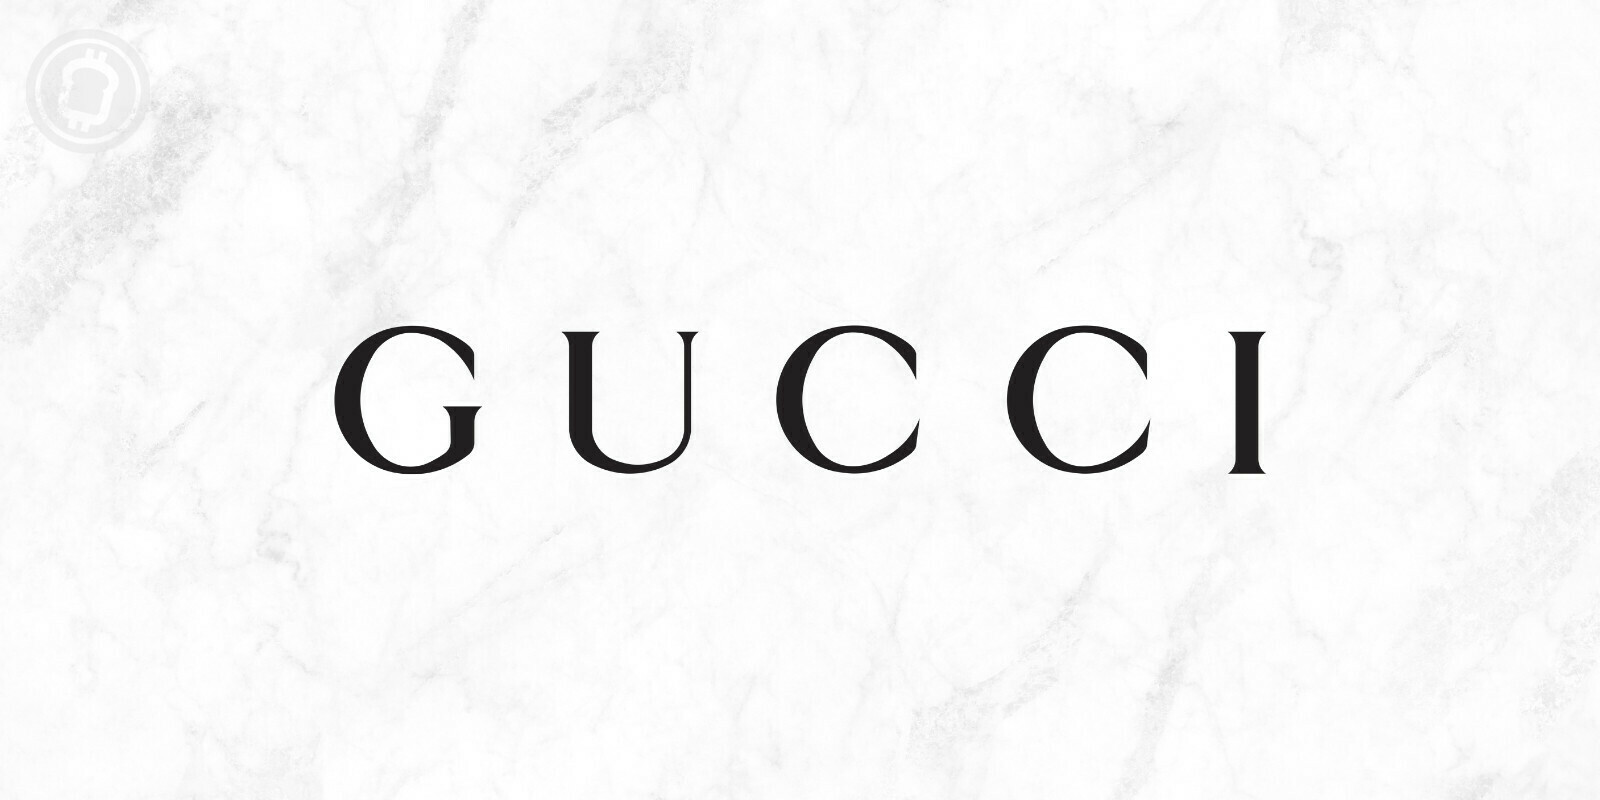 Gucci accepte désormais les cryptomonnaies dans certains de ses magasins aux États-Unis